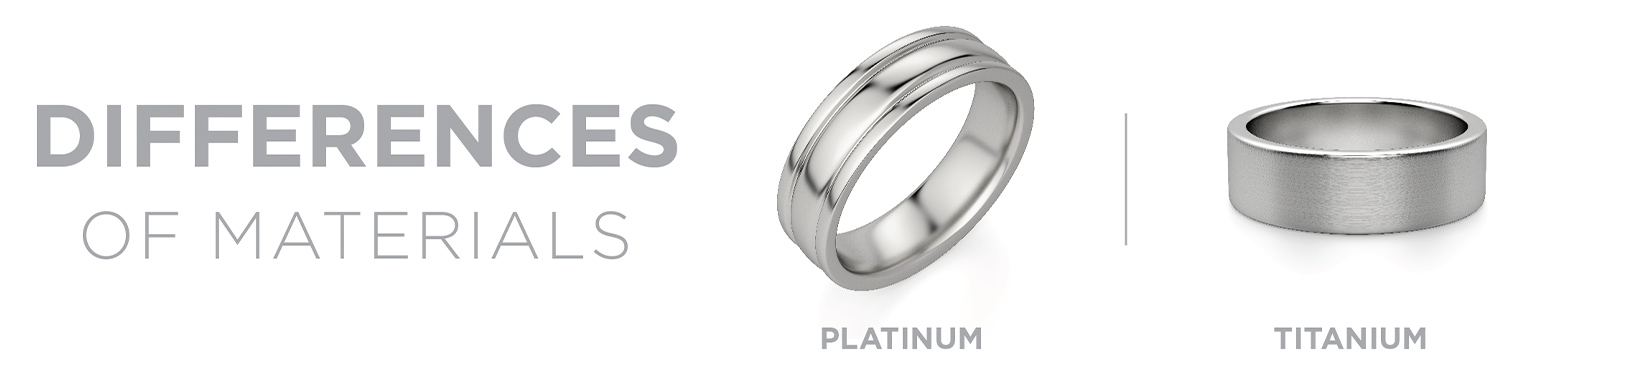 Platinum vs titanium materials